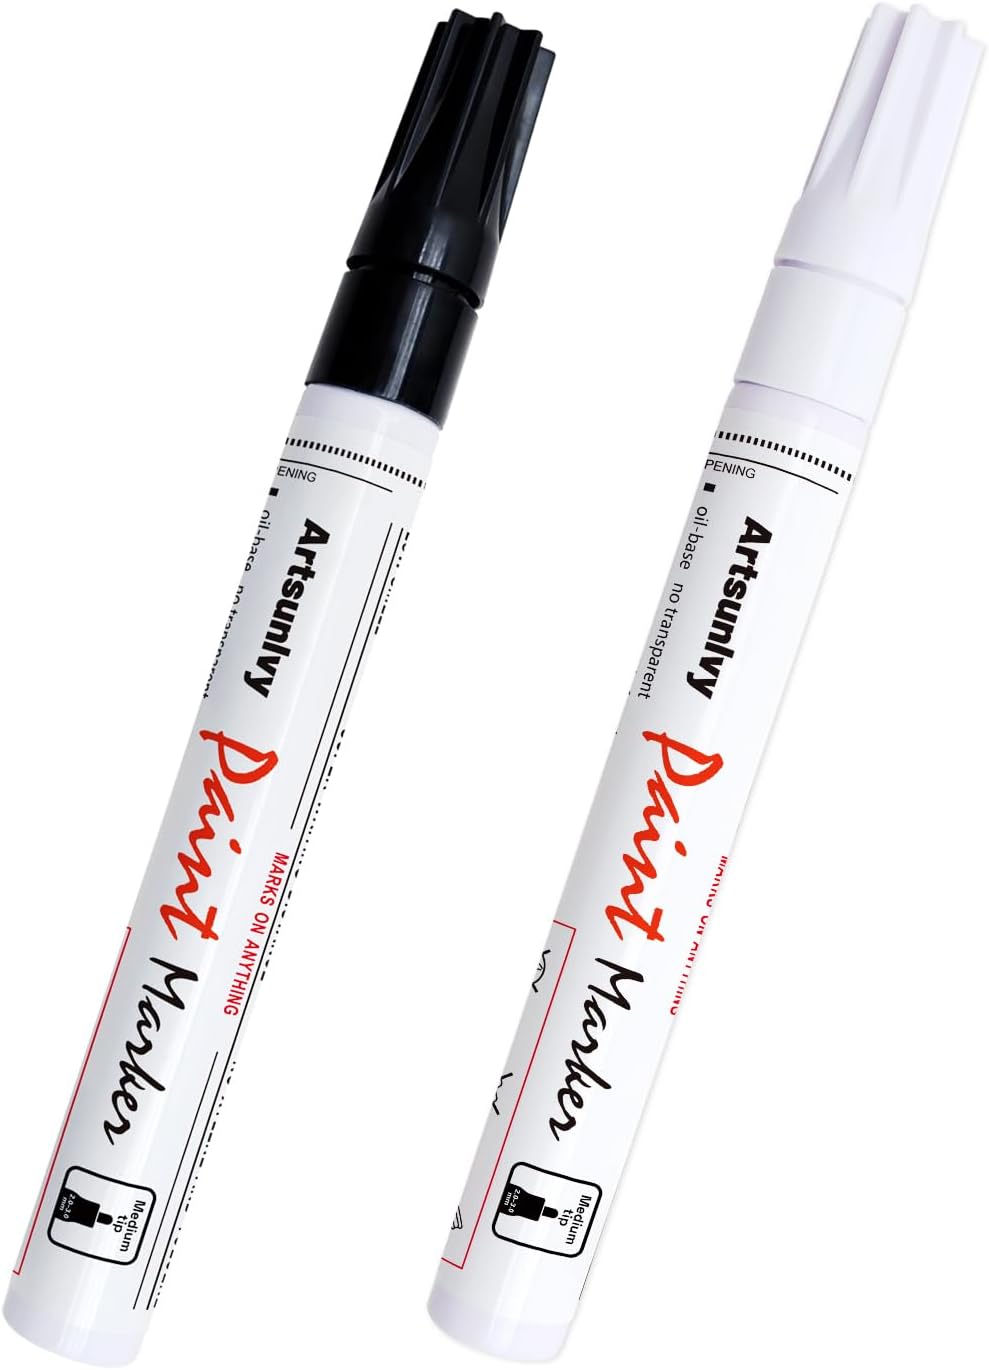 Permanent Paint Pens Paint Markers - 2 Pack Black & [...]